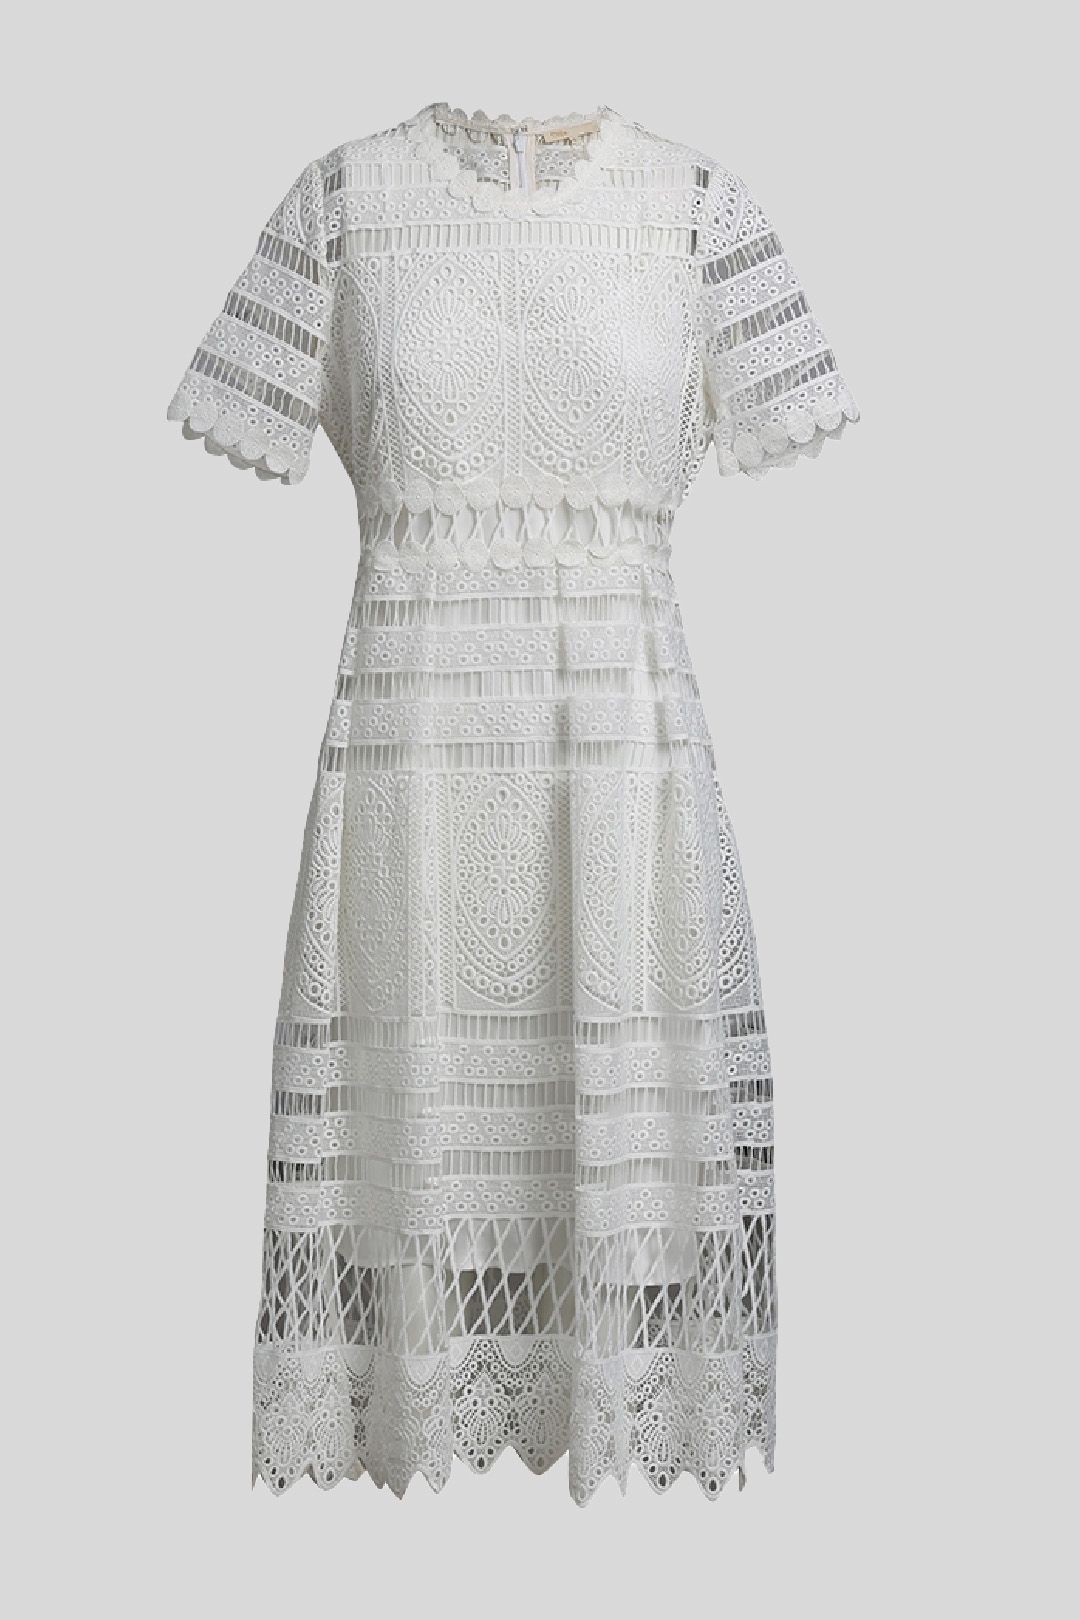 Maje - White Lace Shift Dress